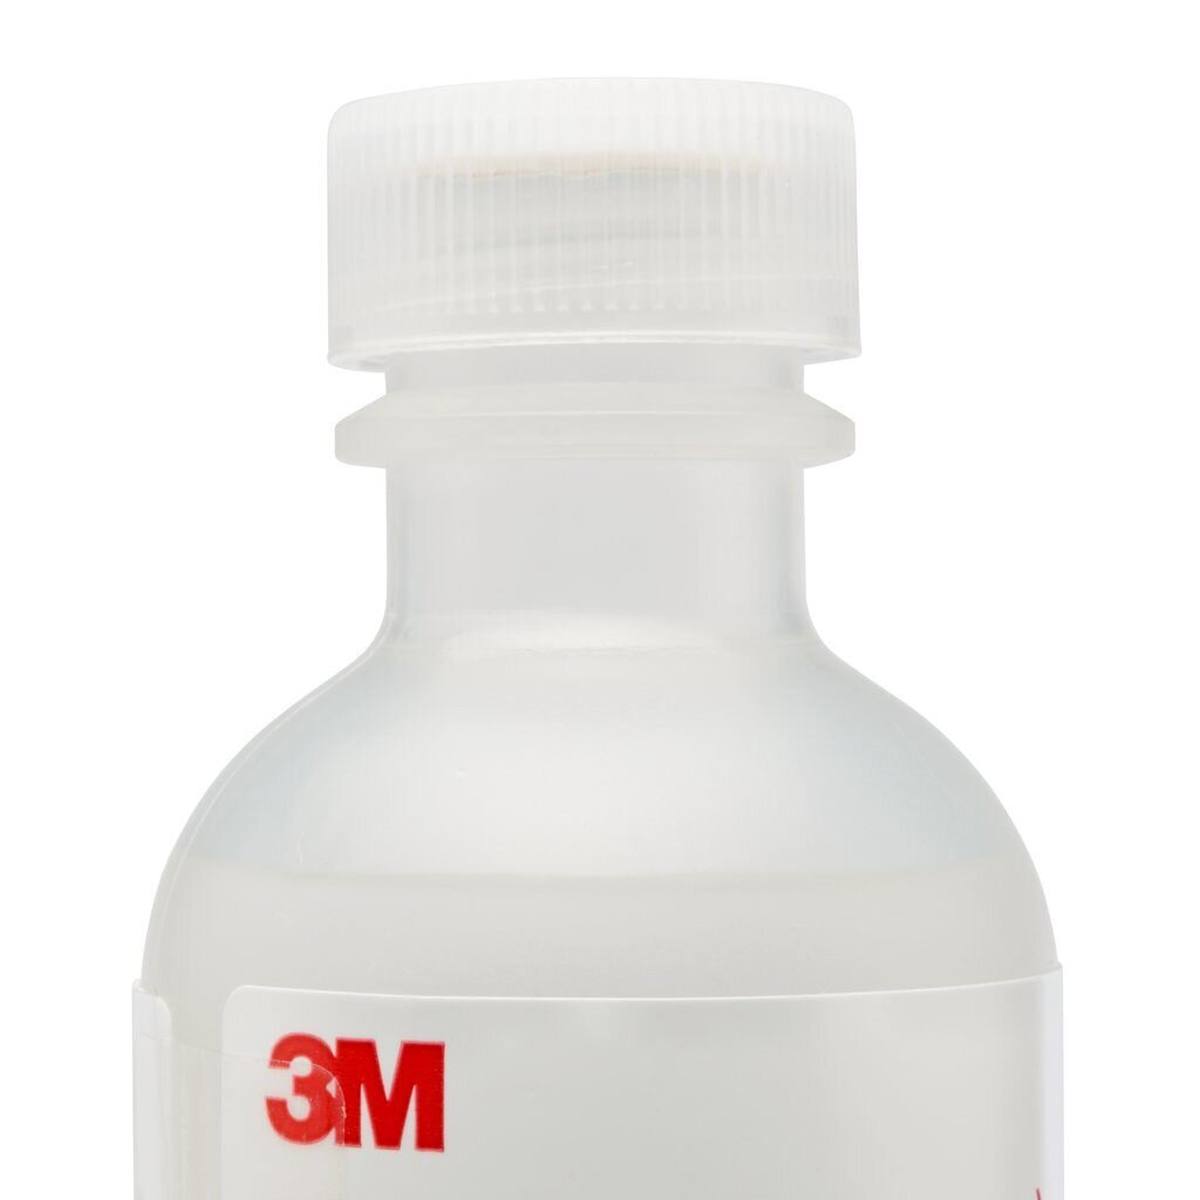 3M FT-31 Soluzione per test di sensibilitÃ , flaconi da 55 ml, amaro (confezione=6 pezzi)